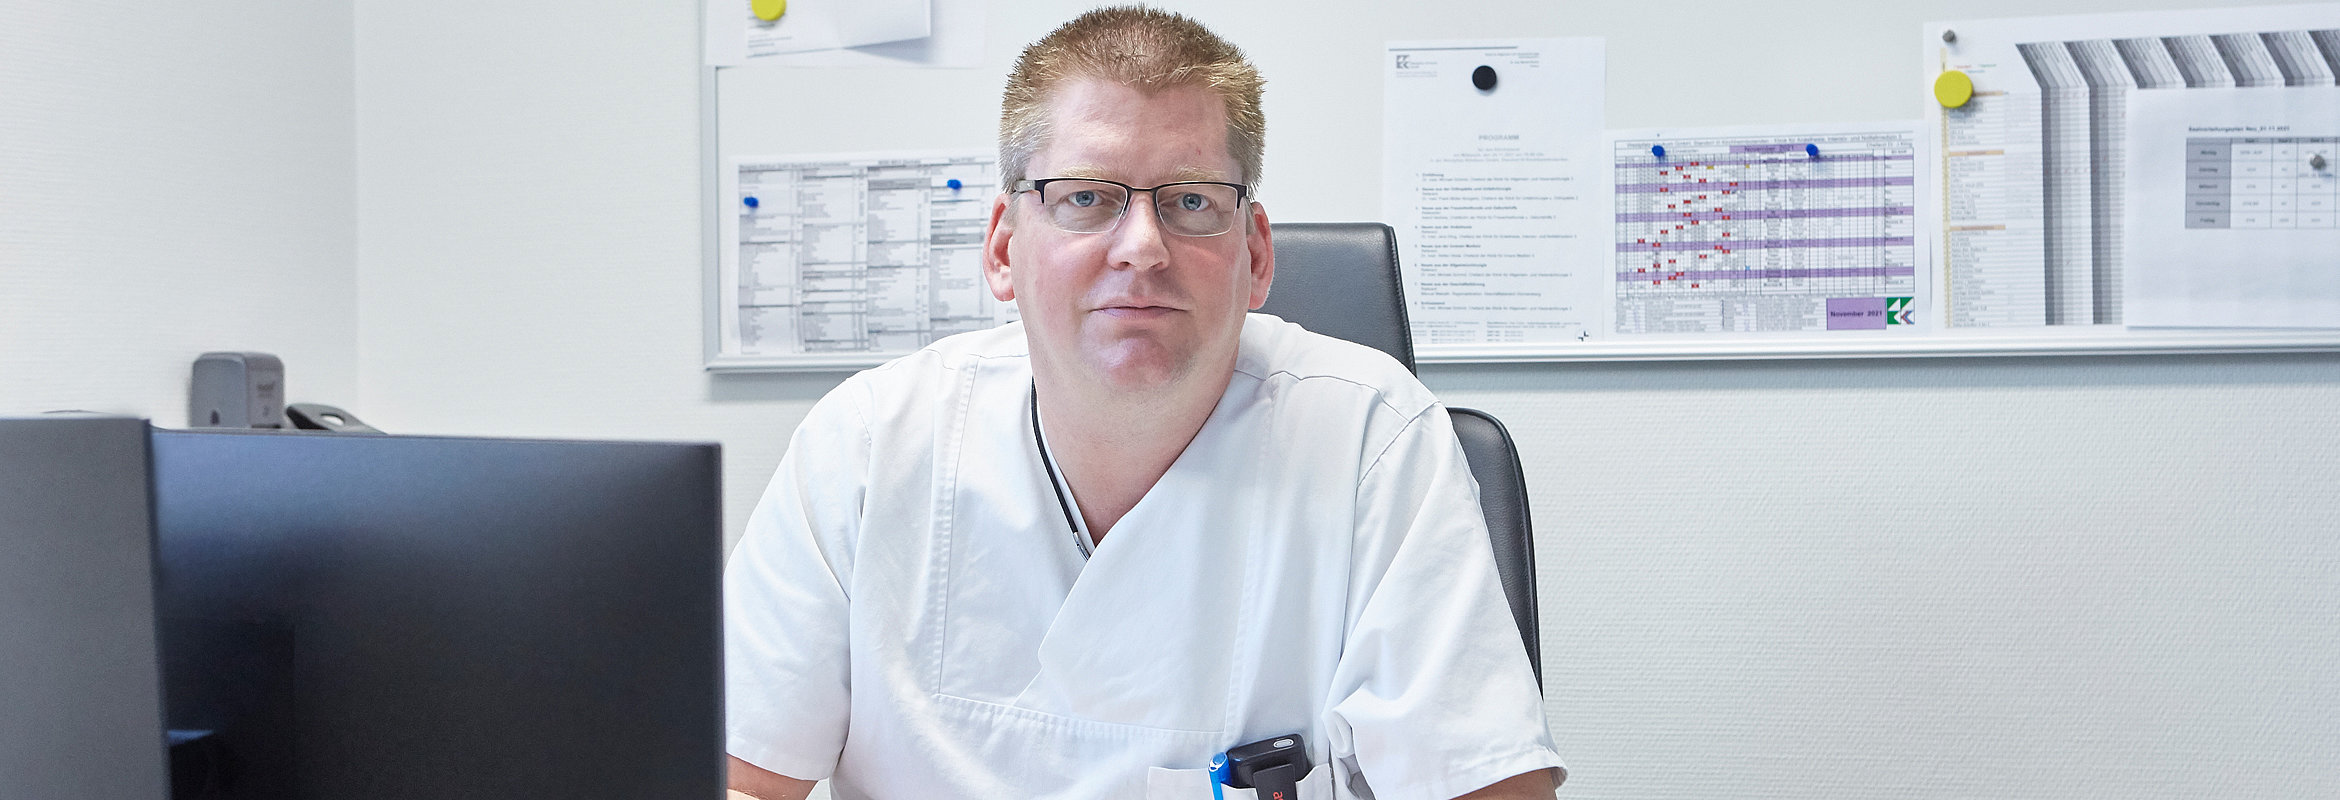 Dr. med. Jens Kling, Chefarzt der Klinik für Anästhesie, Intensiv- und Notfallmedizin Kirchheimbolanden